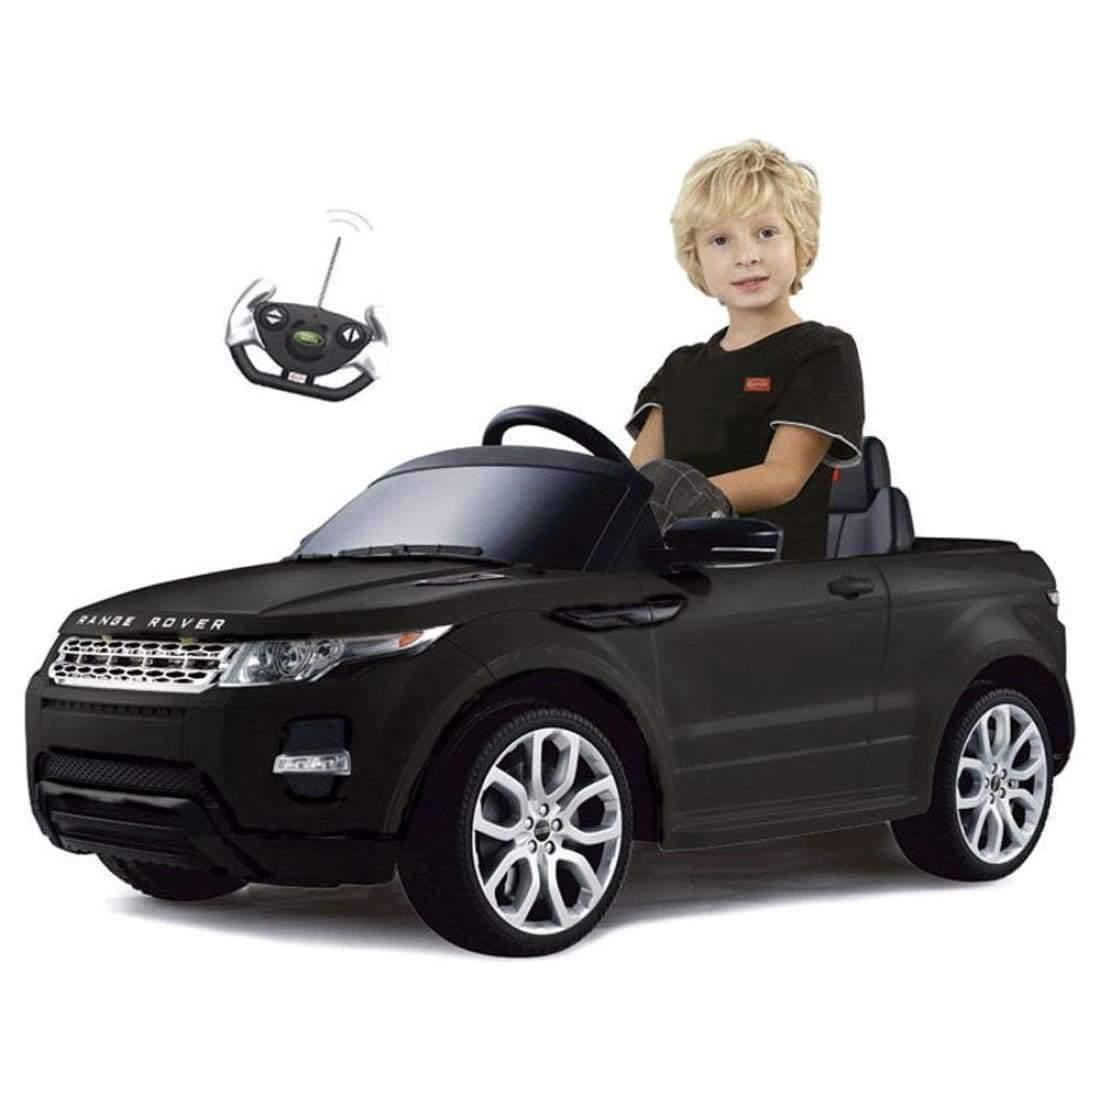 Land Rover Evoque 12v Little Riderz